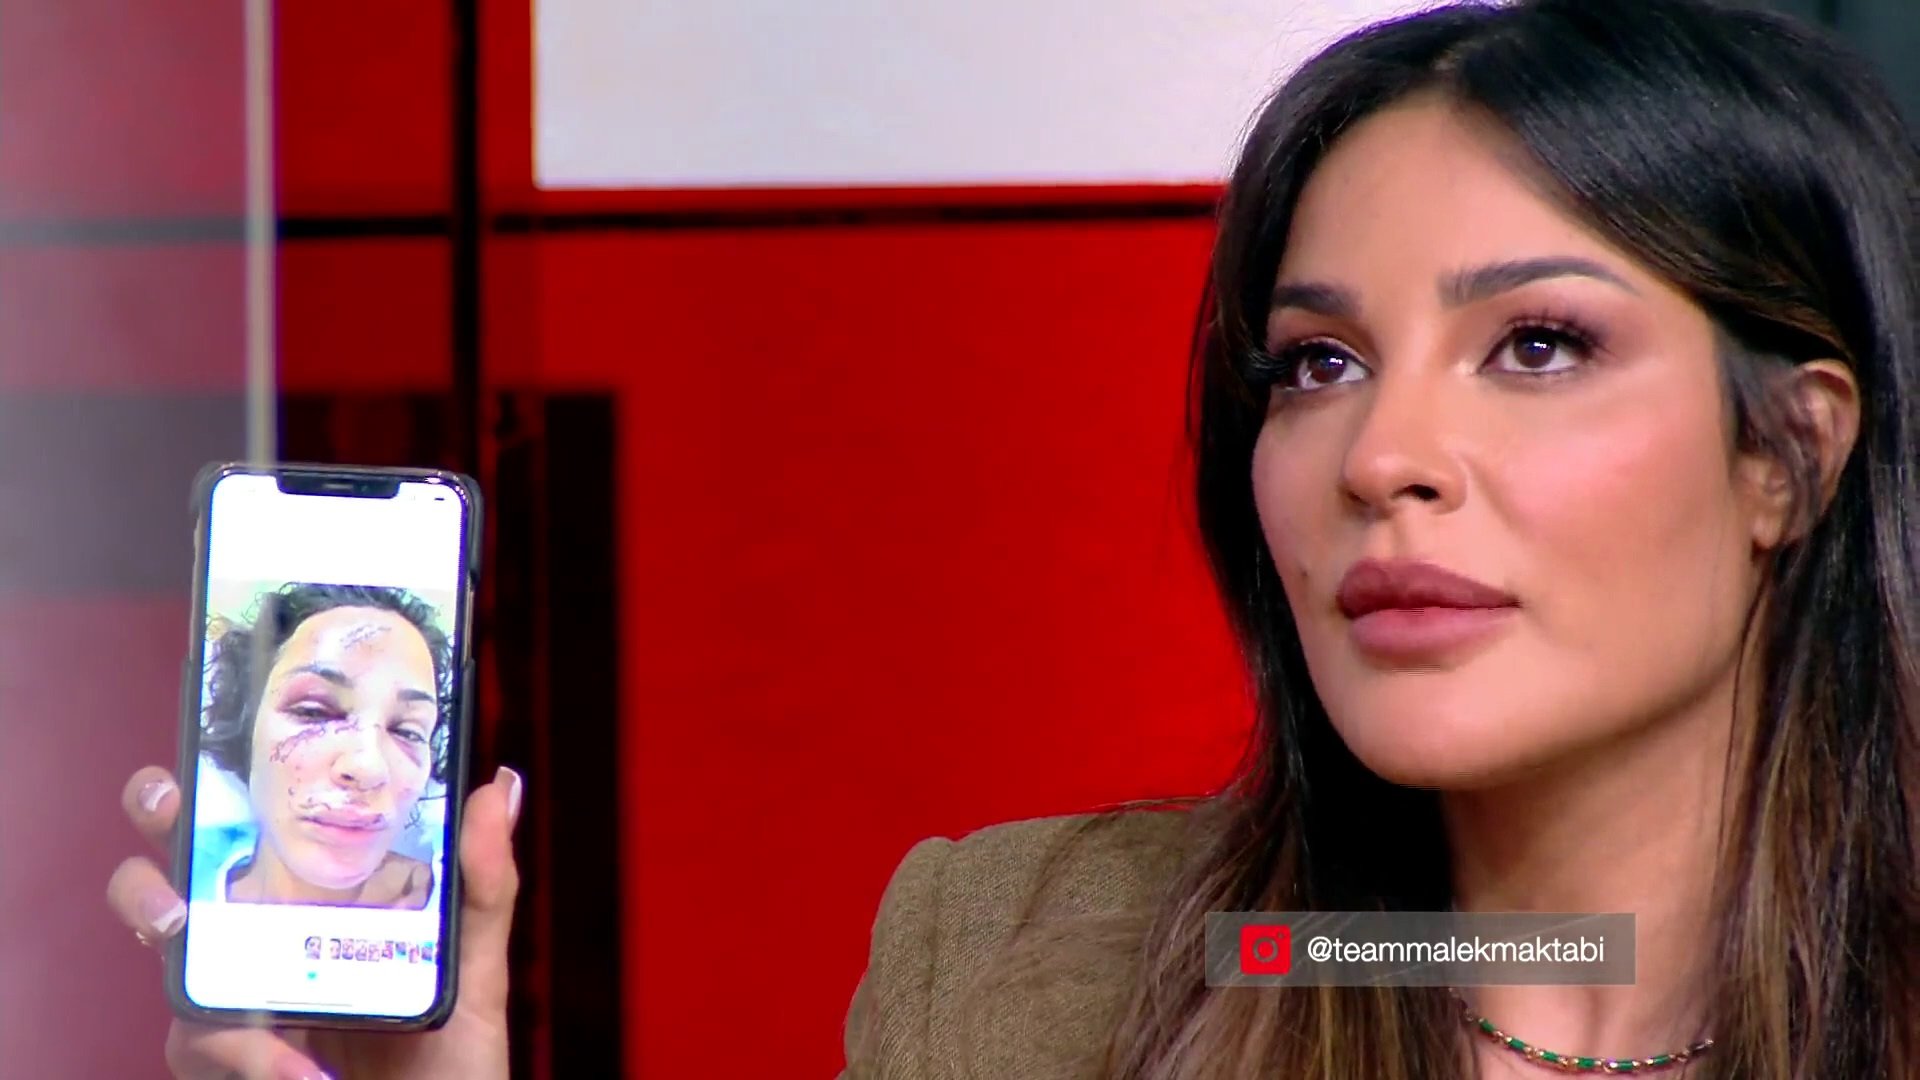 نادين نجيم تتقاسم مع جمهورها صور جروح وجهها في انفجار مرفأ بيروت